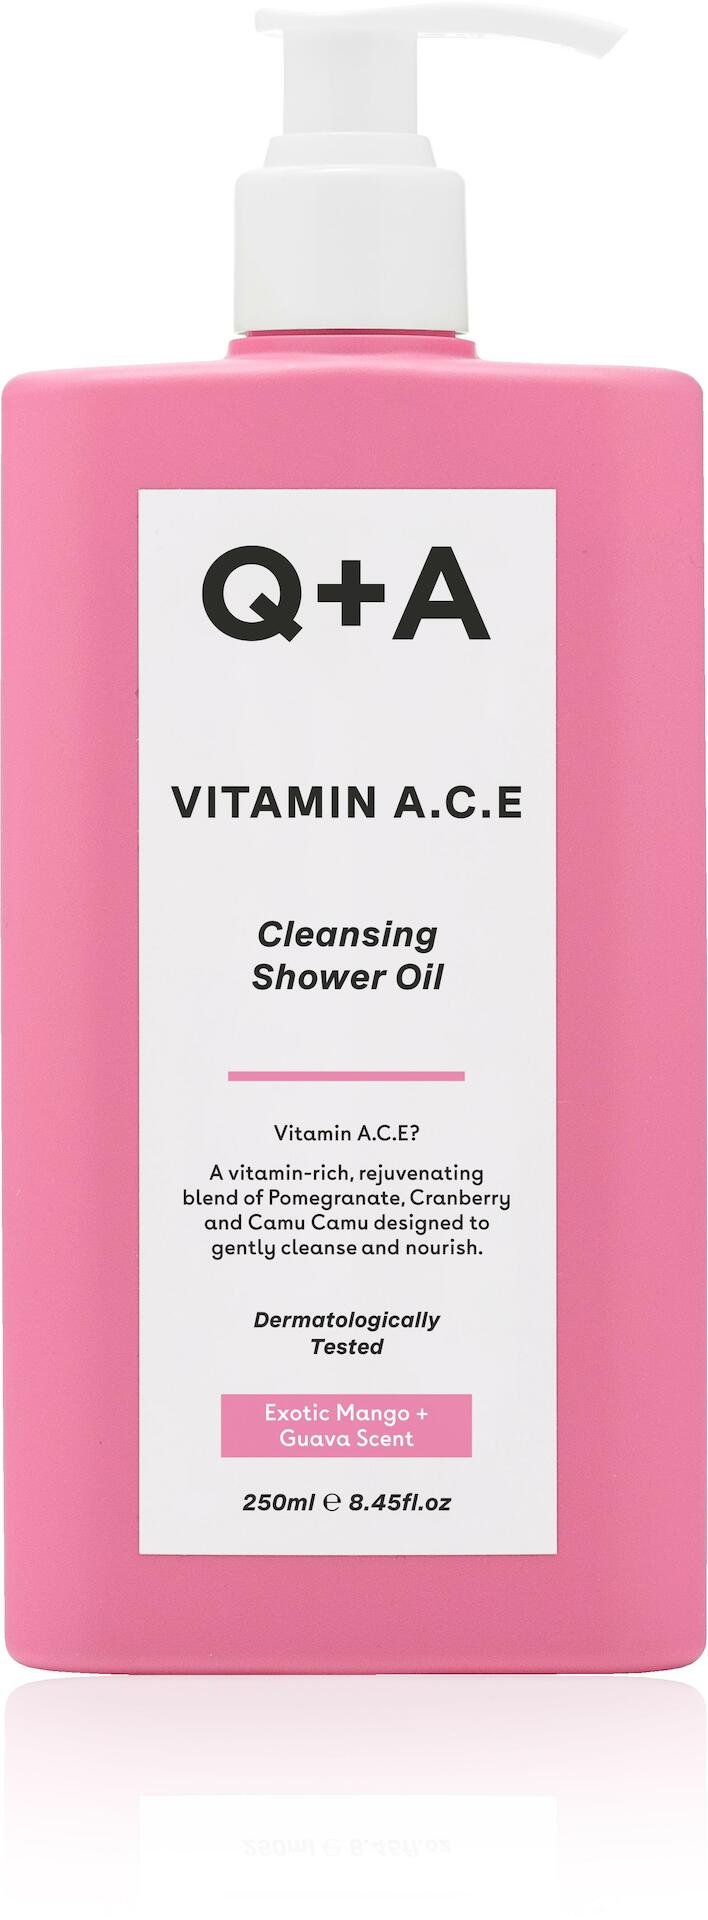 Q+A Vitamin A.C.E Shower Oil 250ml